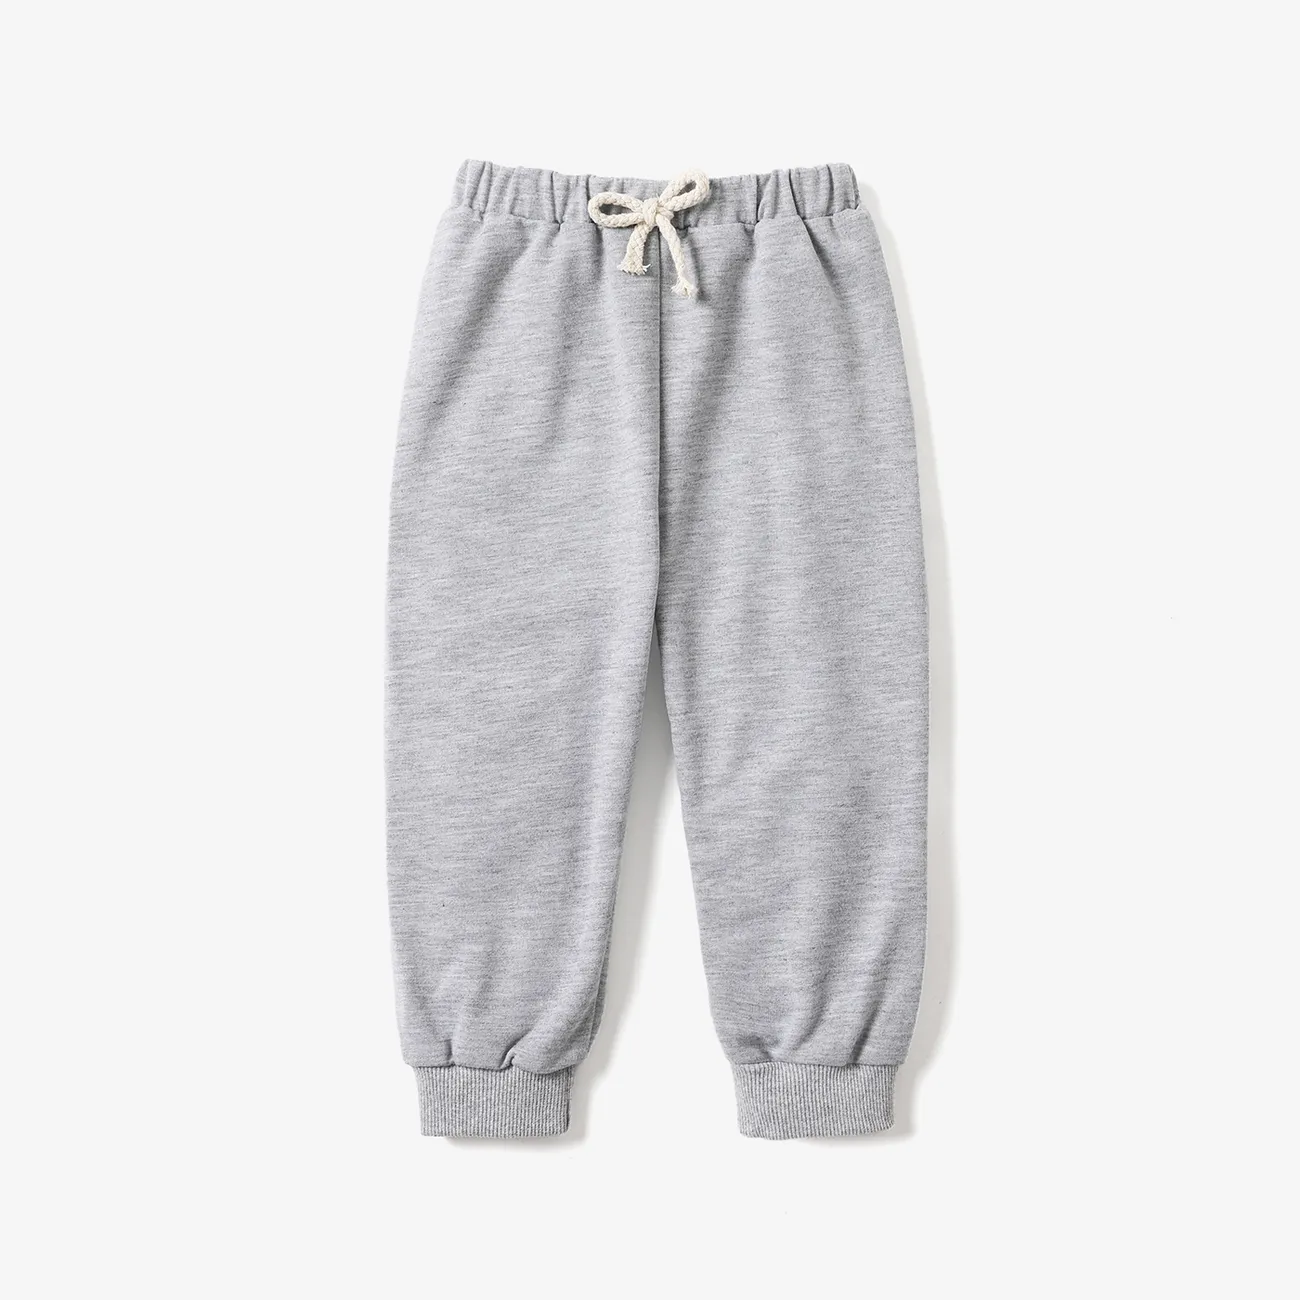 Baby Boy/Girl Solid Elasticized Waist Sweatpants Joggers Pants Grey big image 1